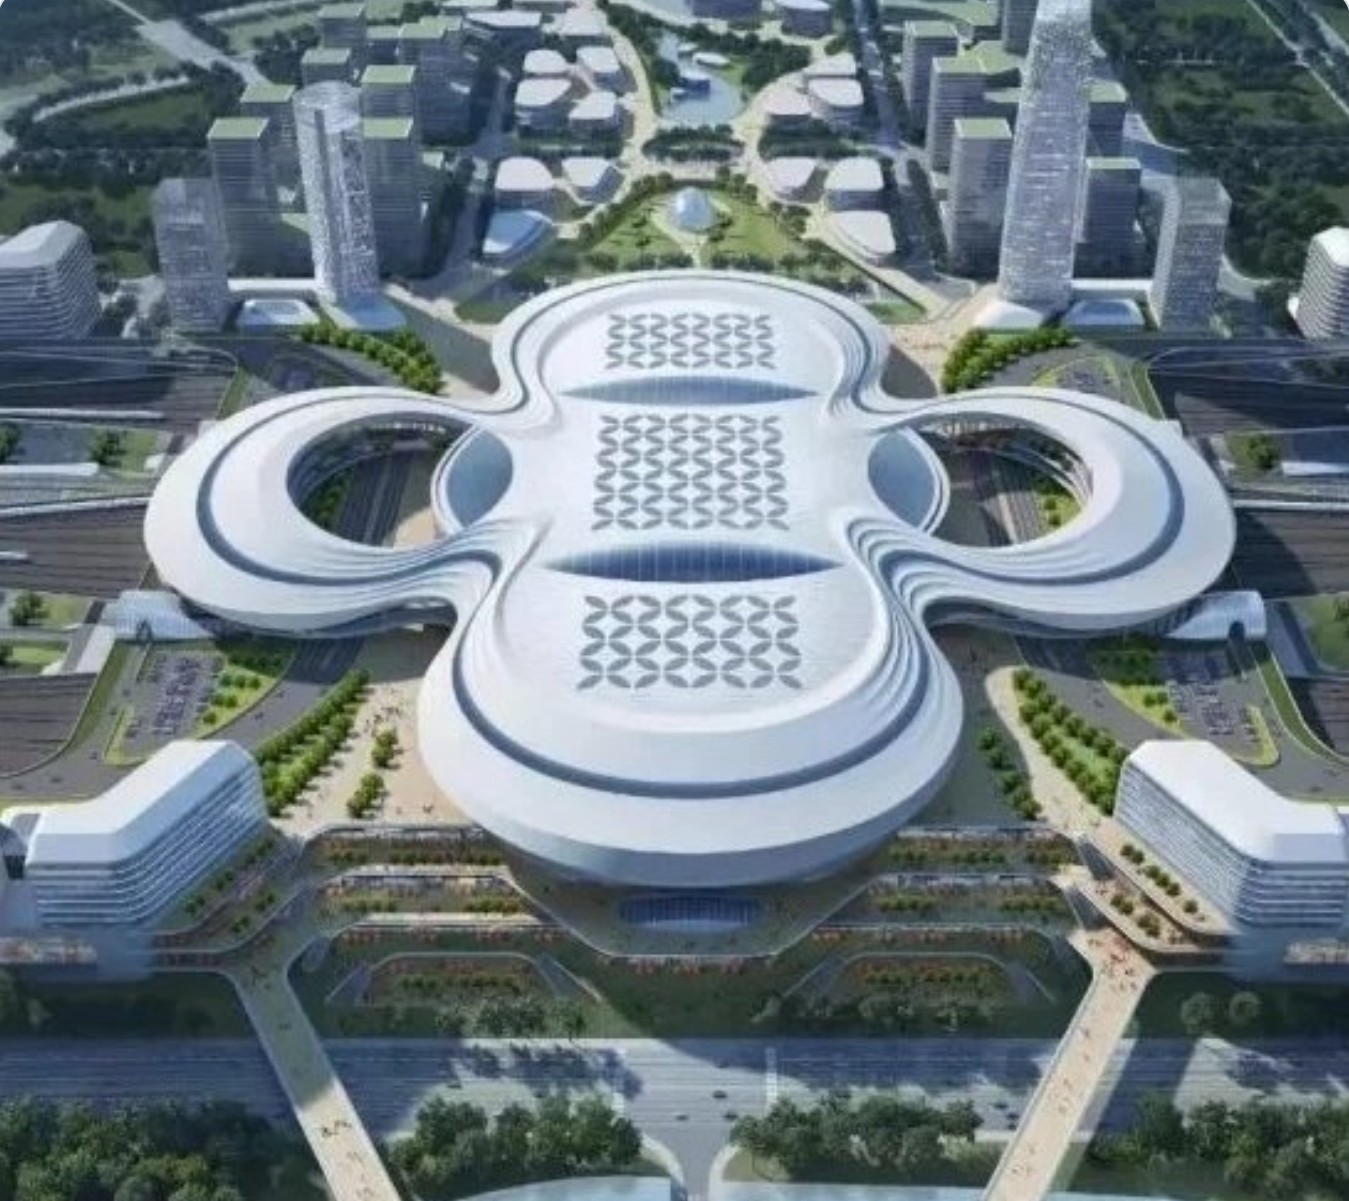 Thiết kế nhà ga 2,7 tỉ USD ở Trung Quốc bị chế giễu - Ảnh 3.